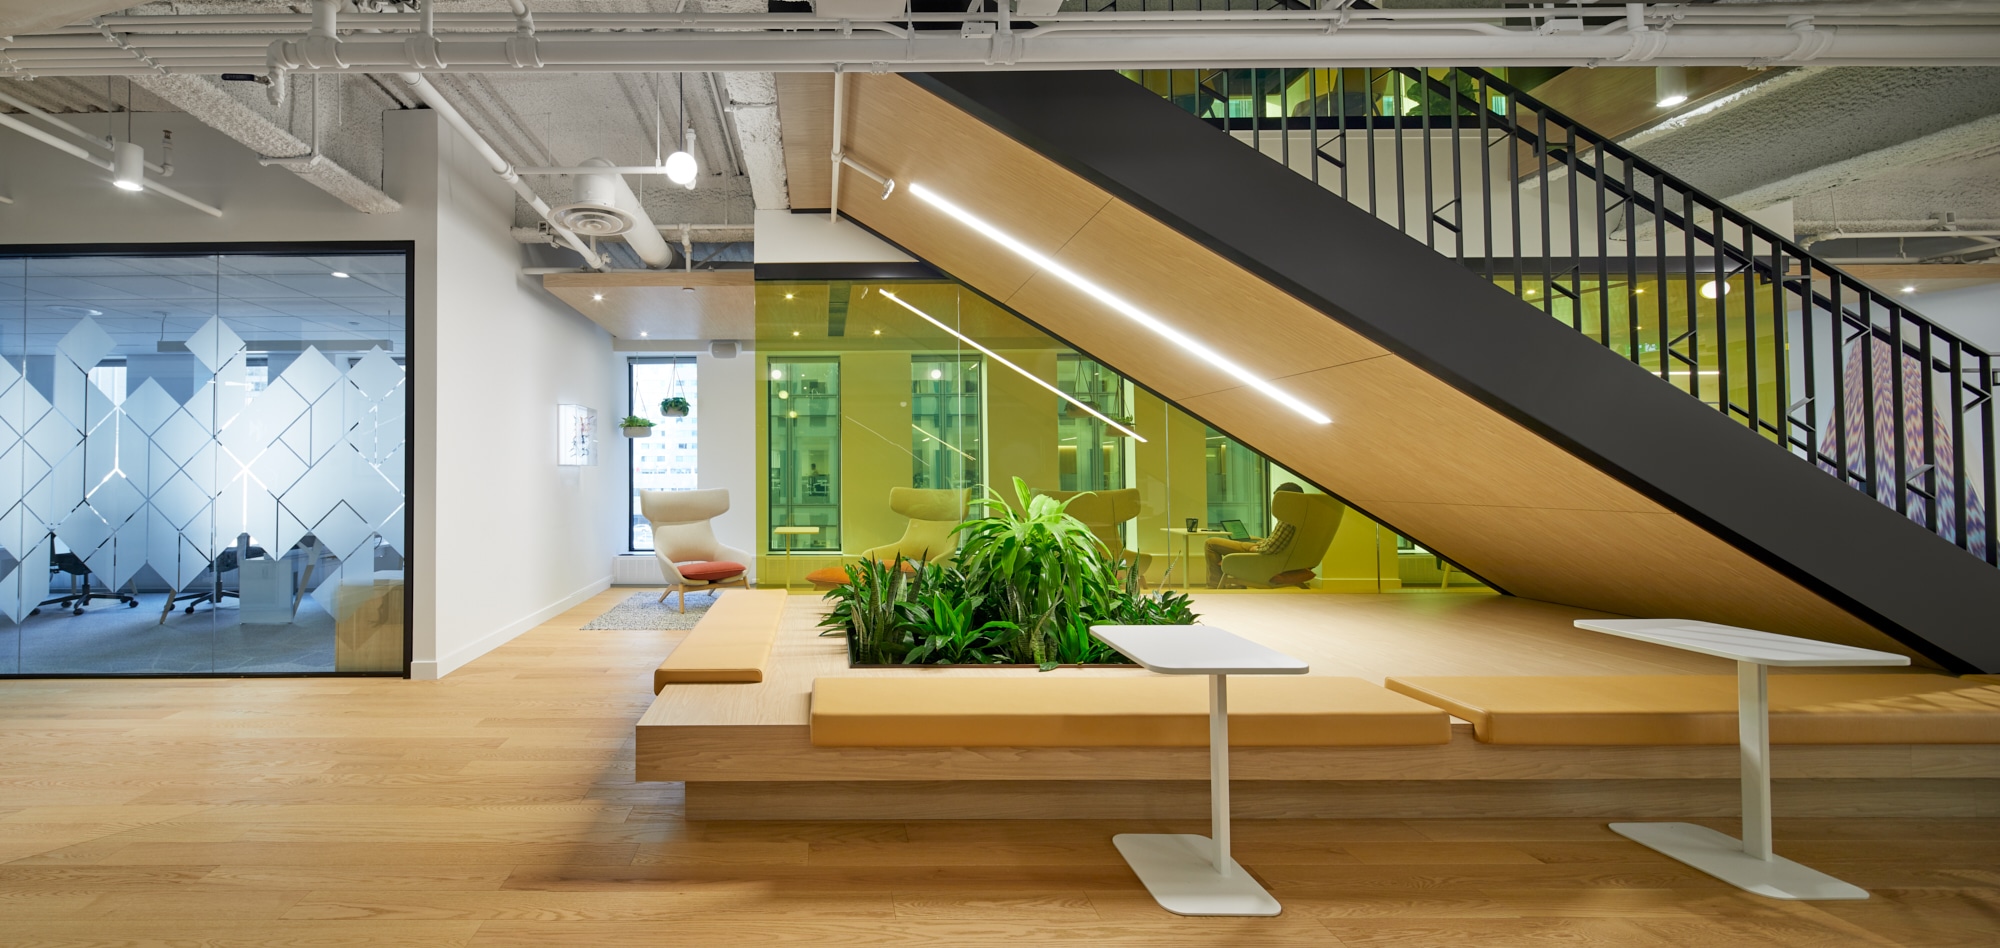 Projet de design corporatif - Escalier principal de Station FinTech à Montréal par VAD Designers d'intérieur commercial.